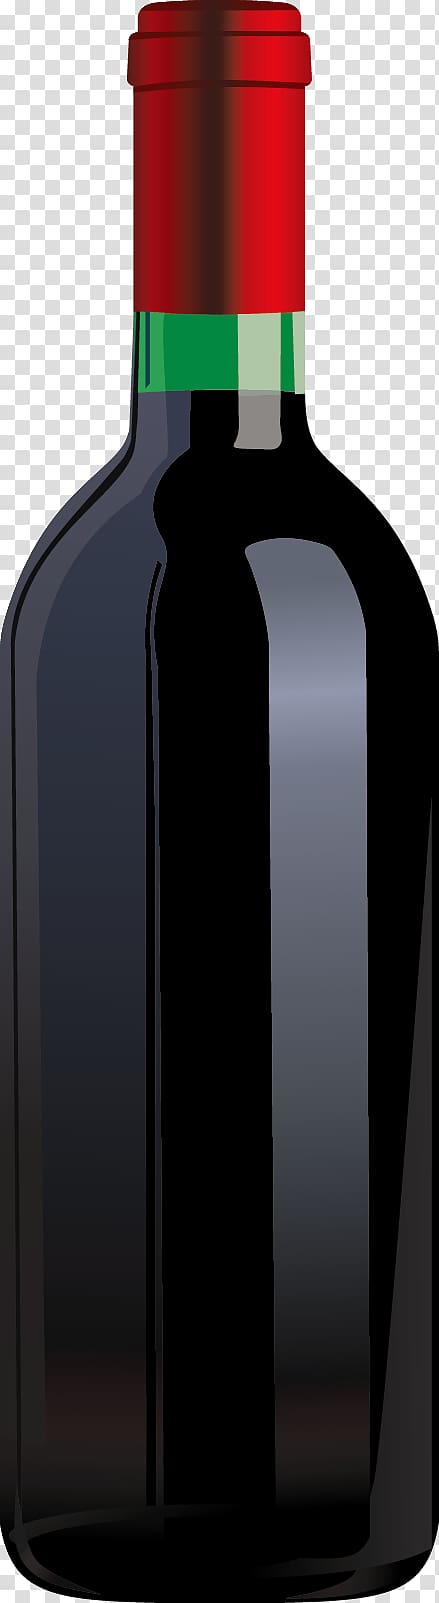 Wine Liqueur Glass bottle, Bottle decoration material transparent background PNG clipart